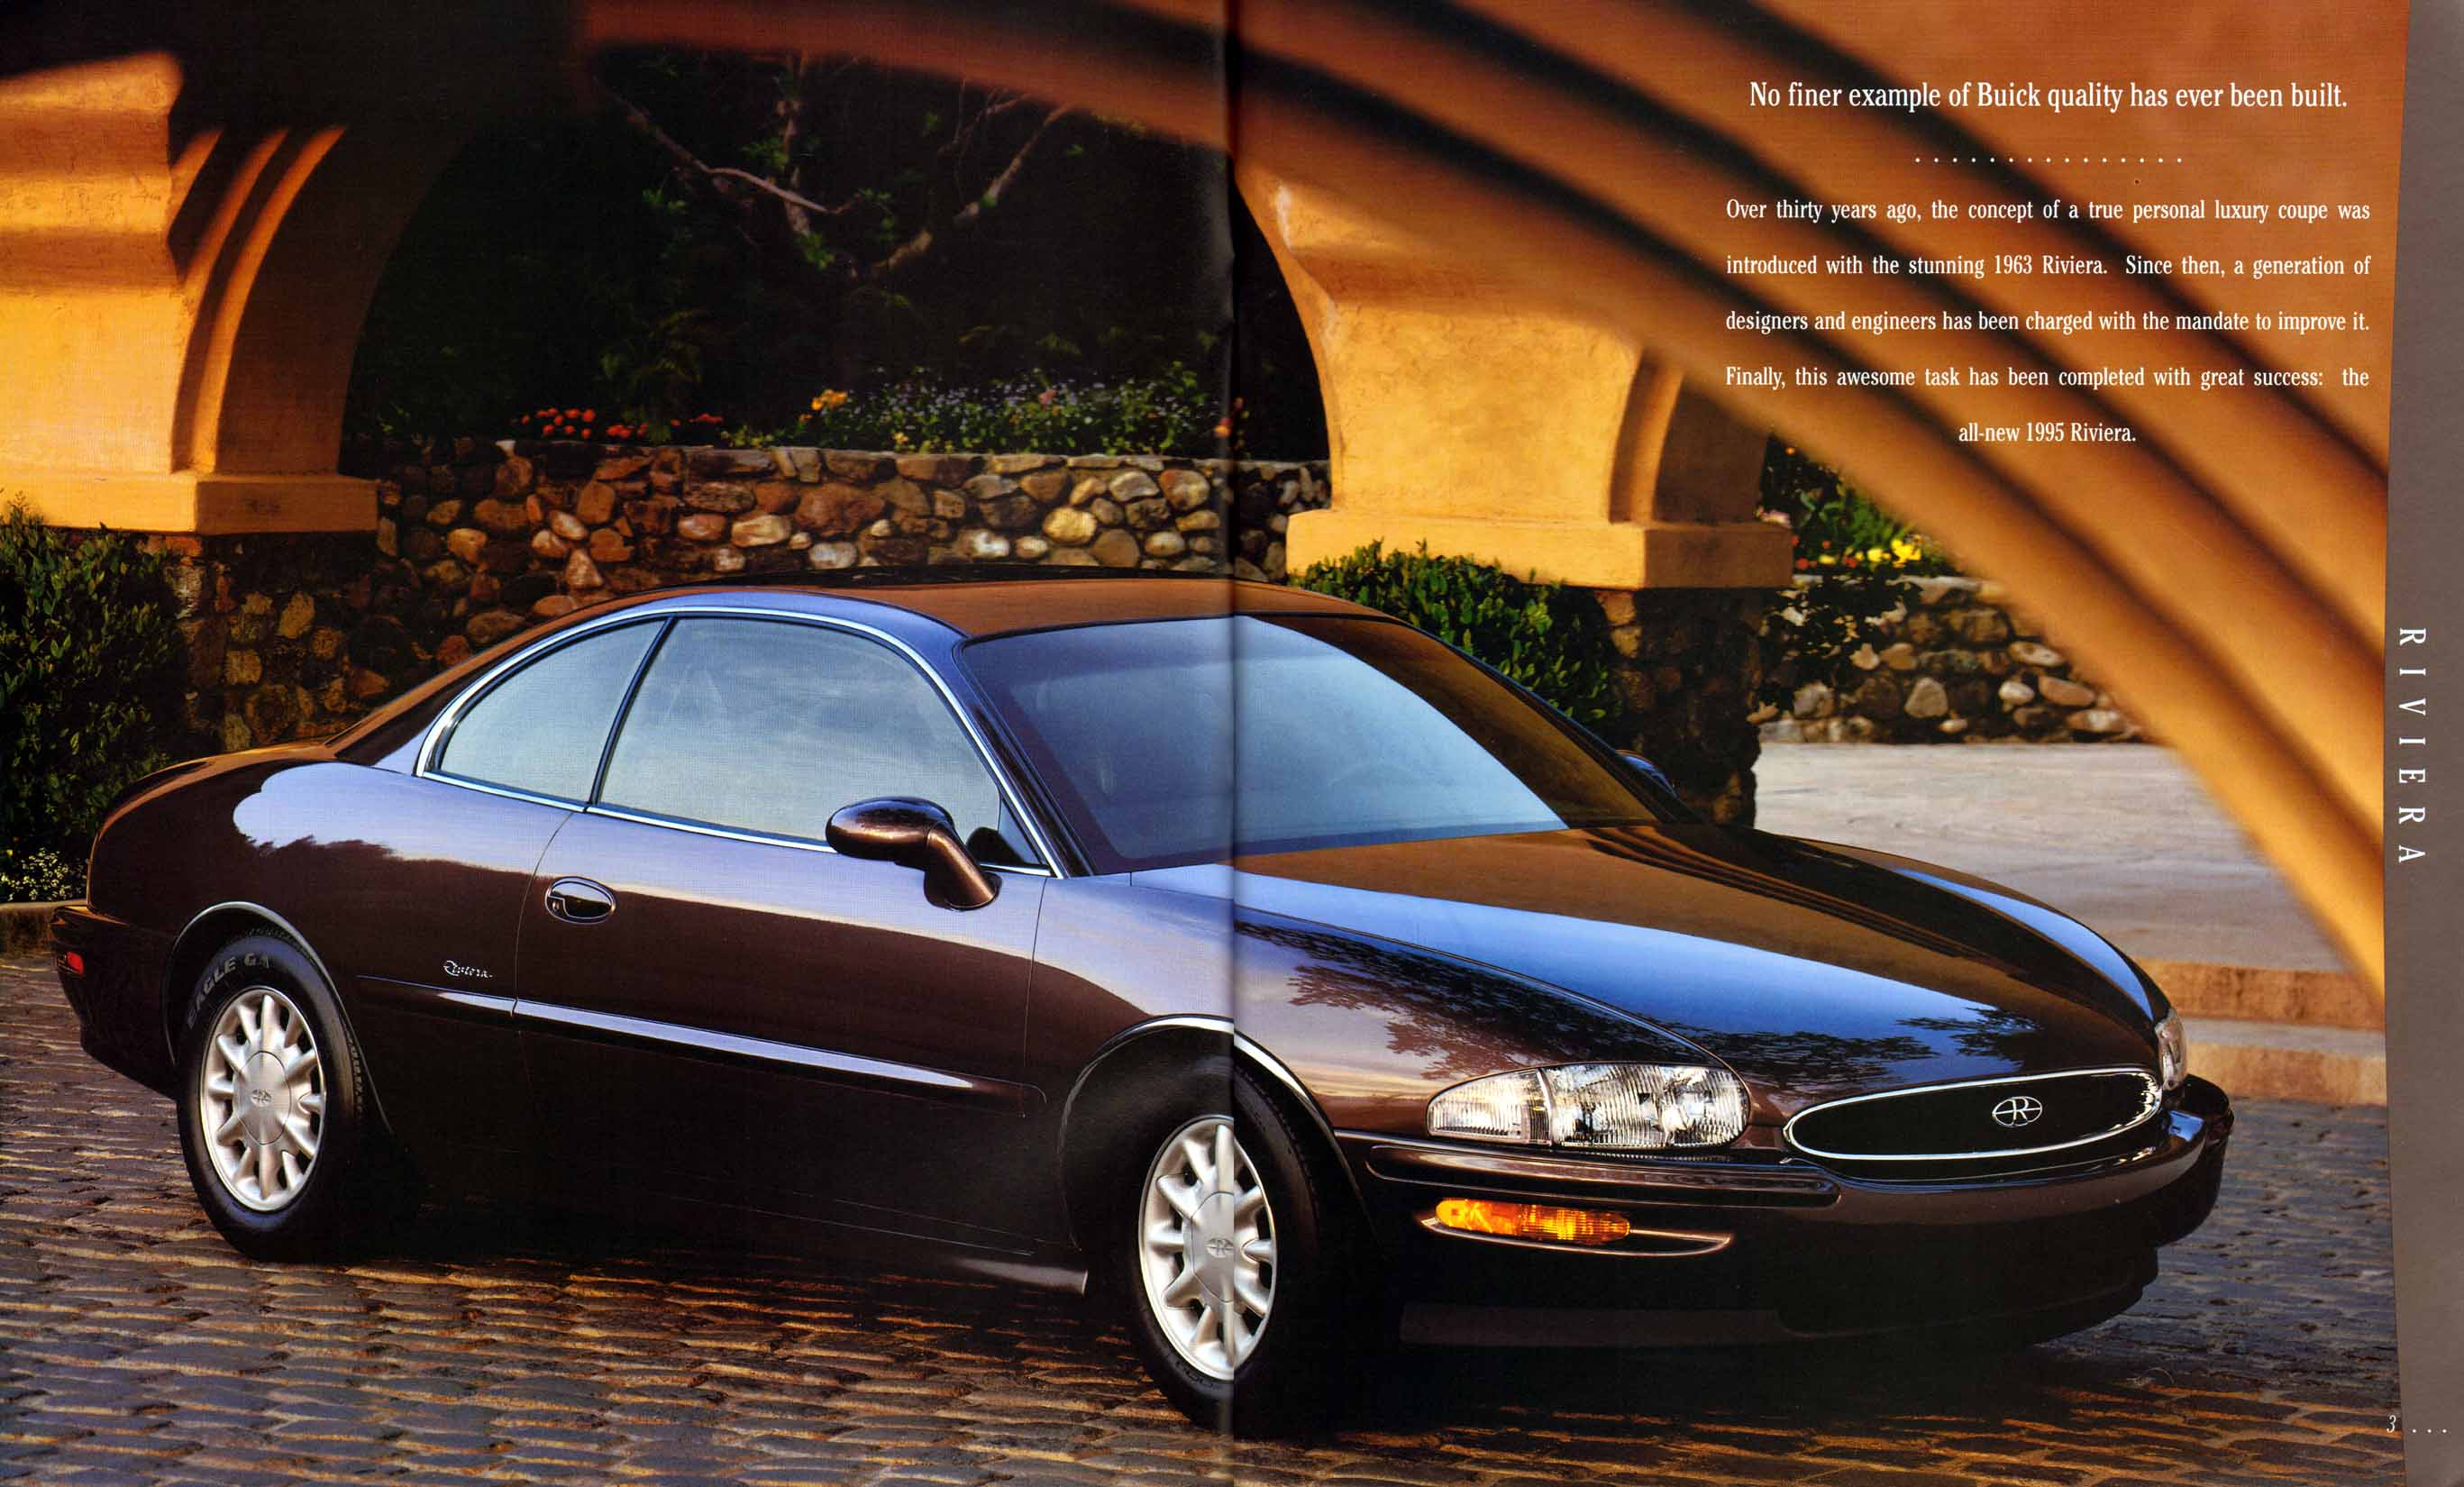 1995 Buick Full Line Prestige-02-03